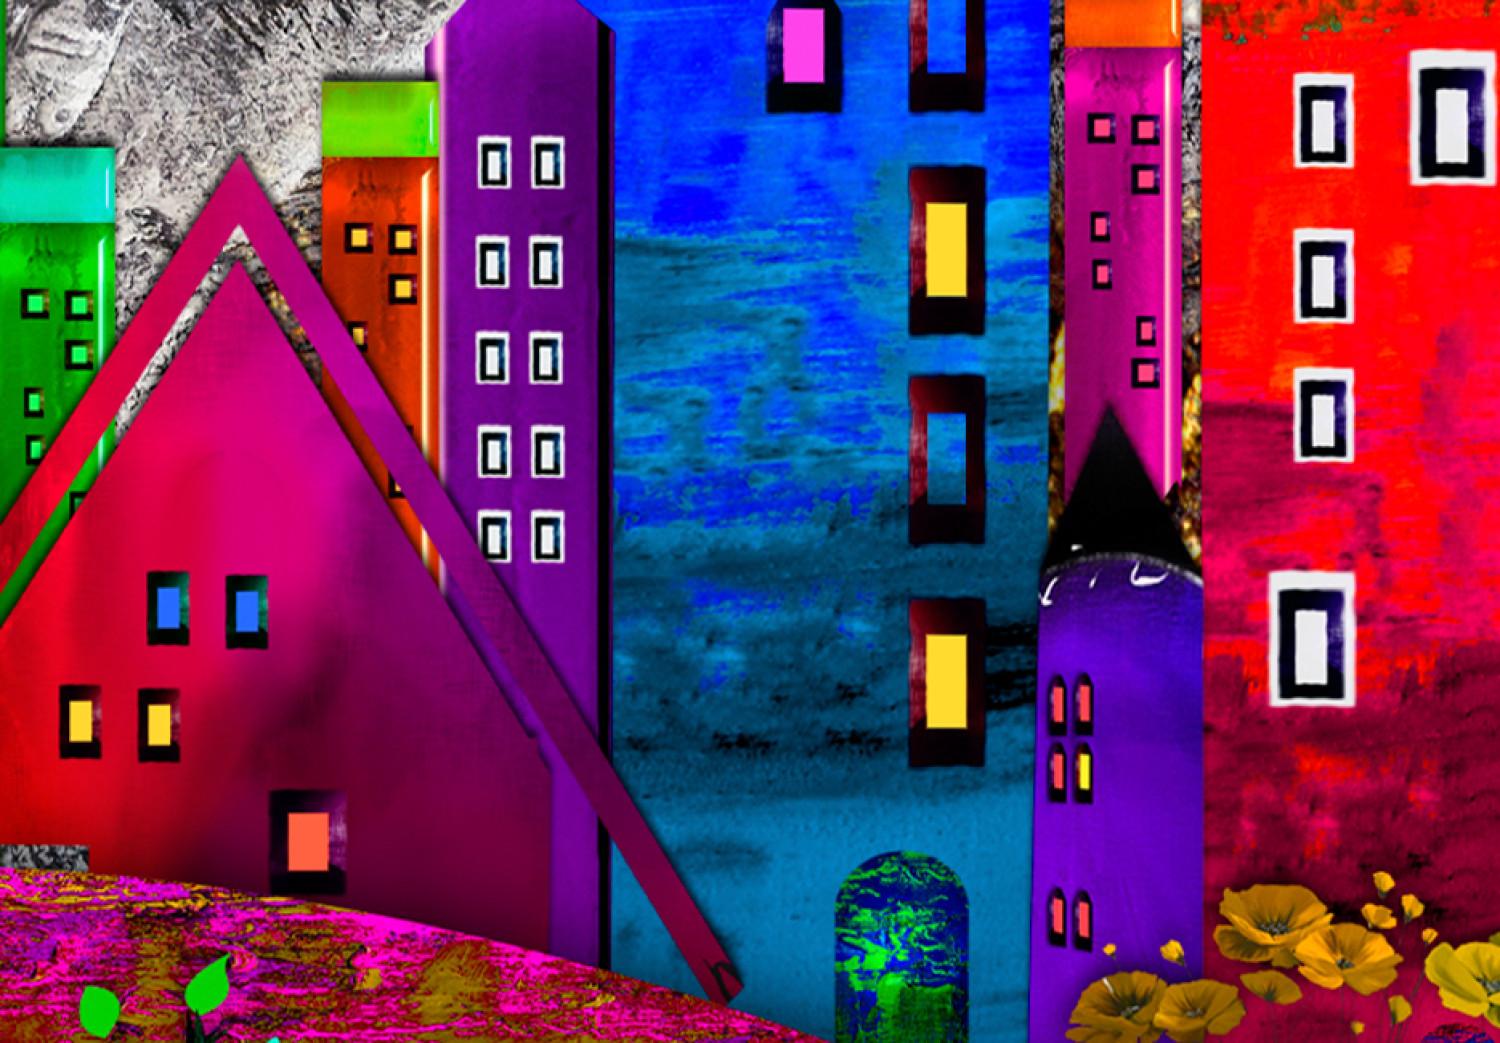 Cuadro Ciudad de expresión (5 piezas) - casas pop art